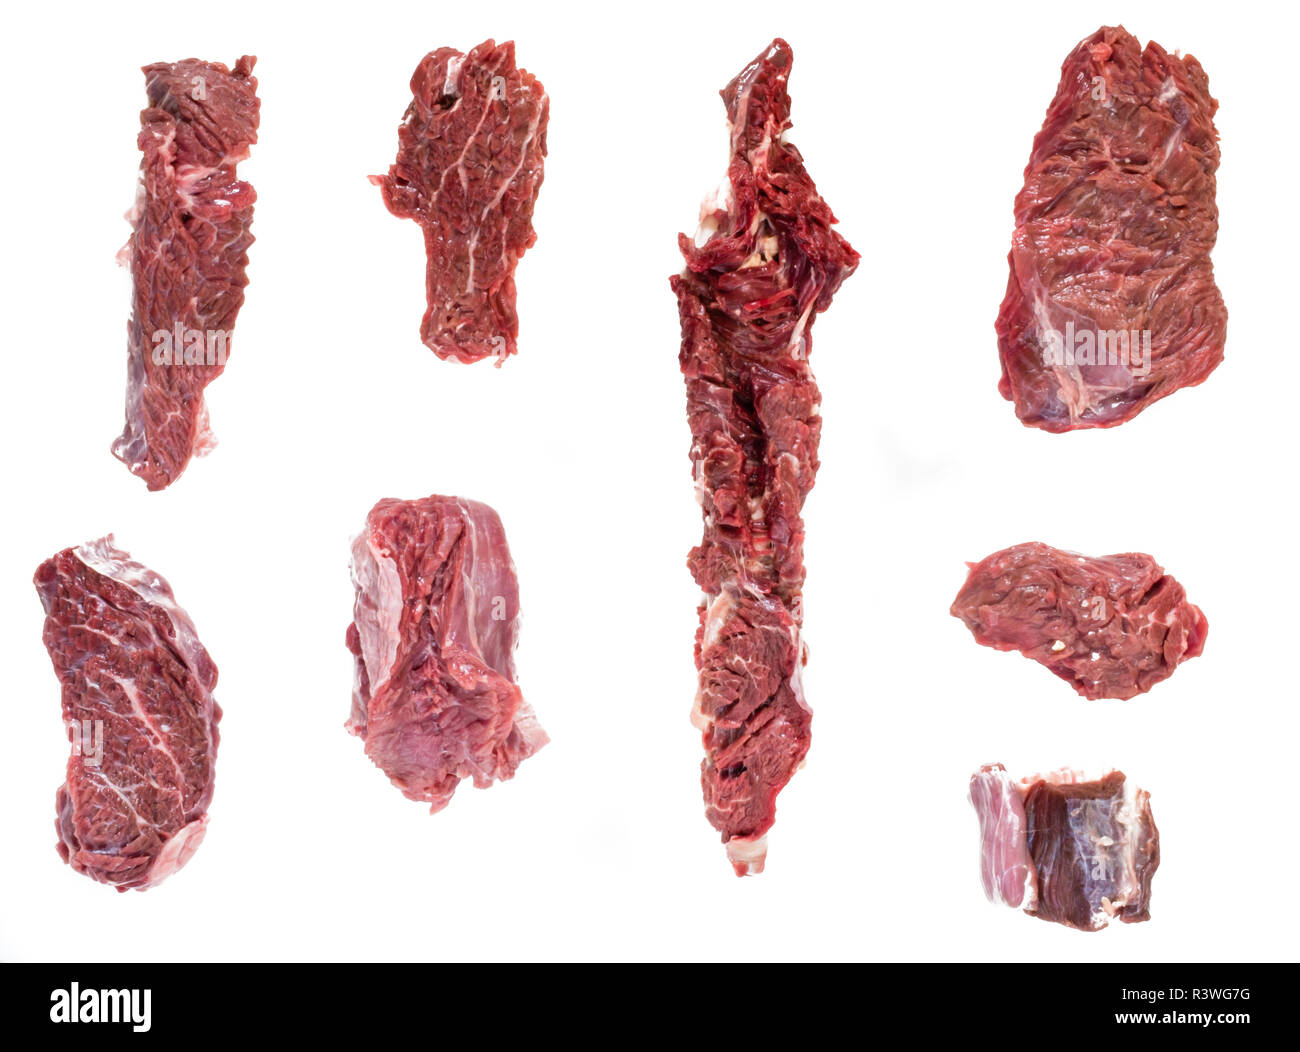 Raw Kuhfleisch Beaf Isoliert Auf Weissem Stockfotografie Alamy